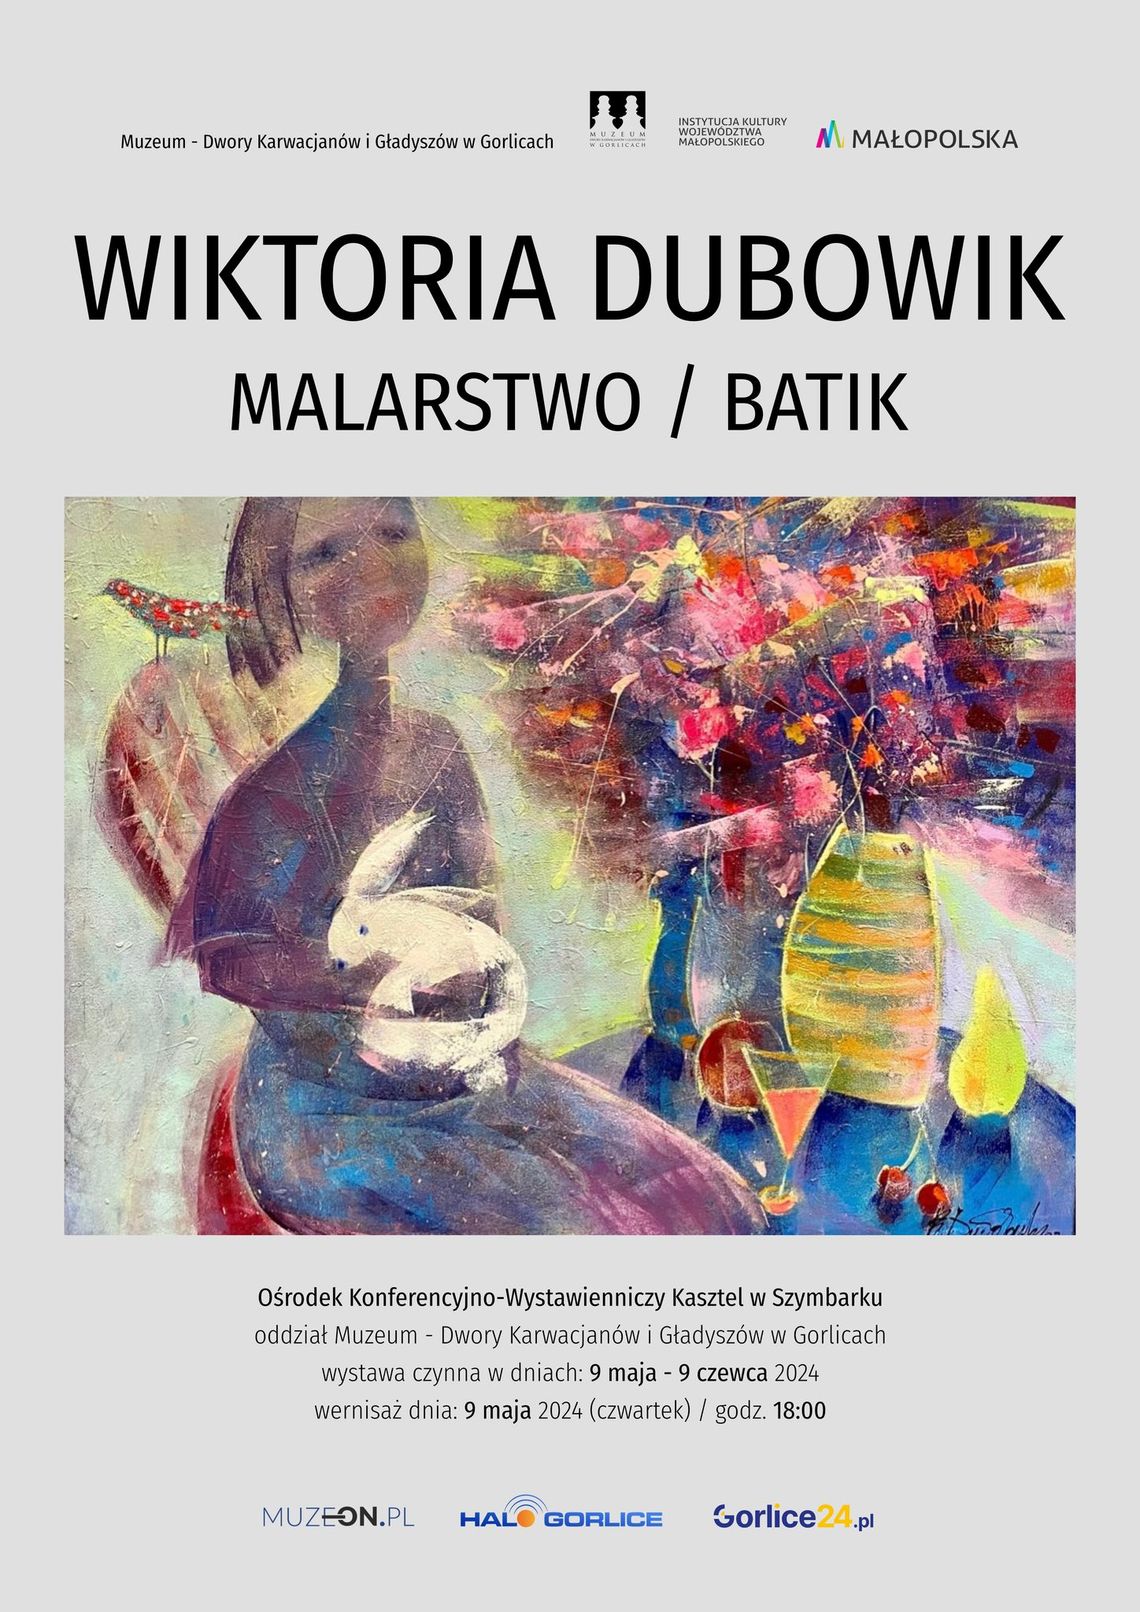 Wernisaż malarstwa Wiktorii Dubowik | halogorlice.info